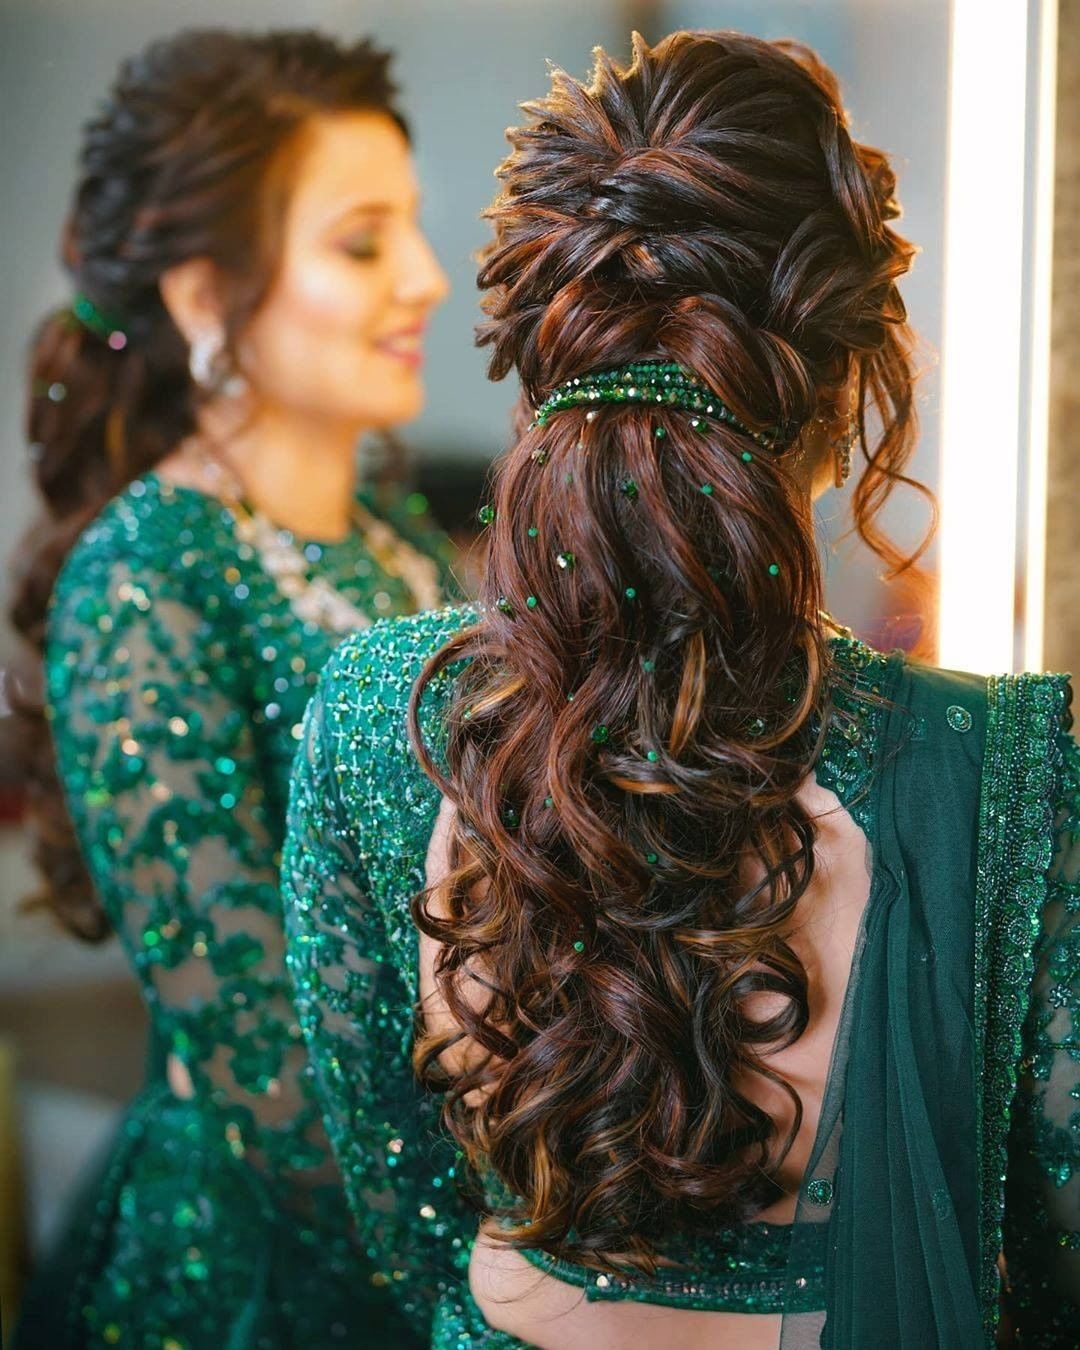 Trending Hair Style For Bridal: शादी-पार्टी के लिए अपनाएं हेयरस्टाइल के ये  तरीके, सब देखेंगे मुड़-मुड़ कर